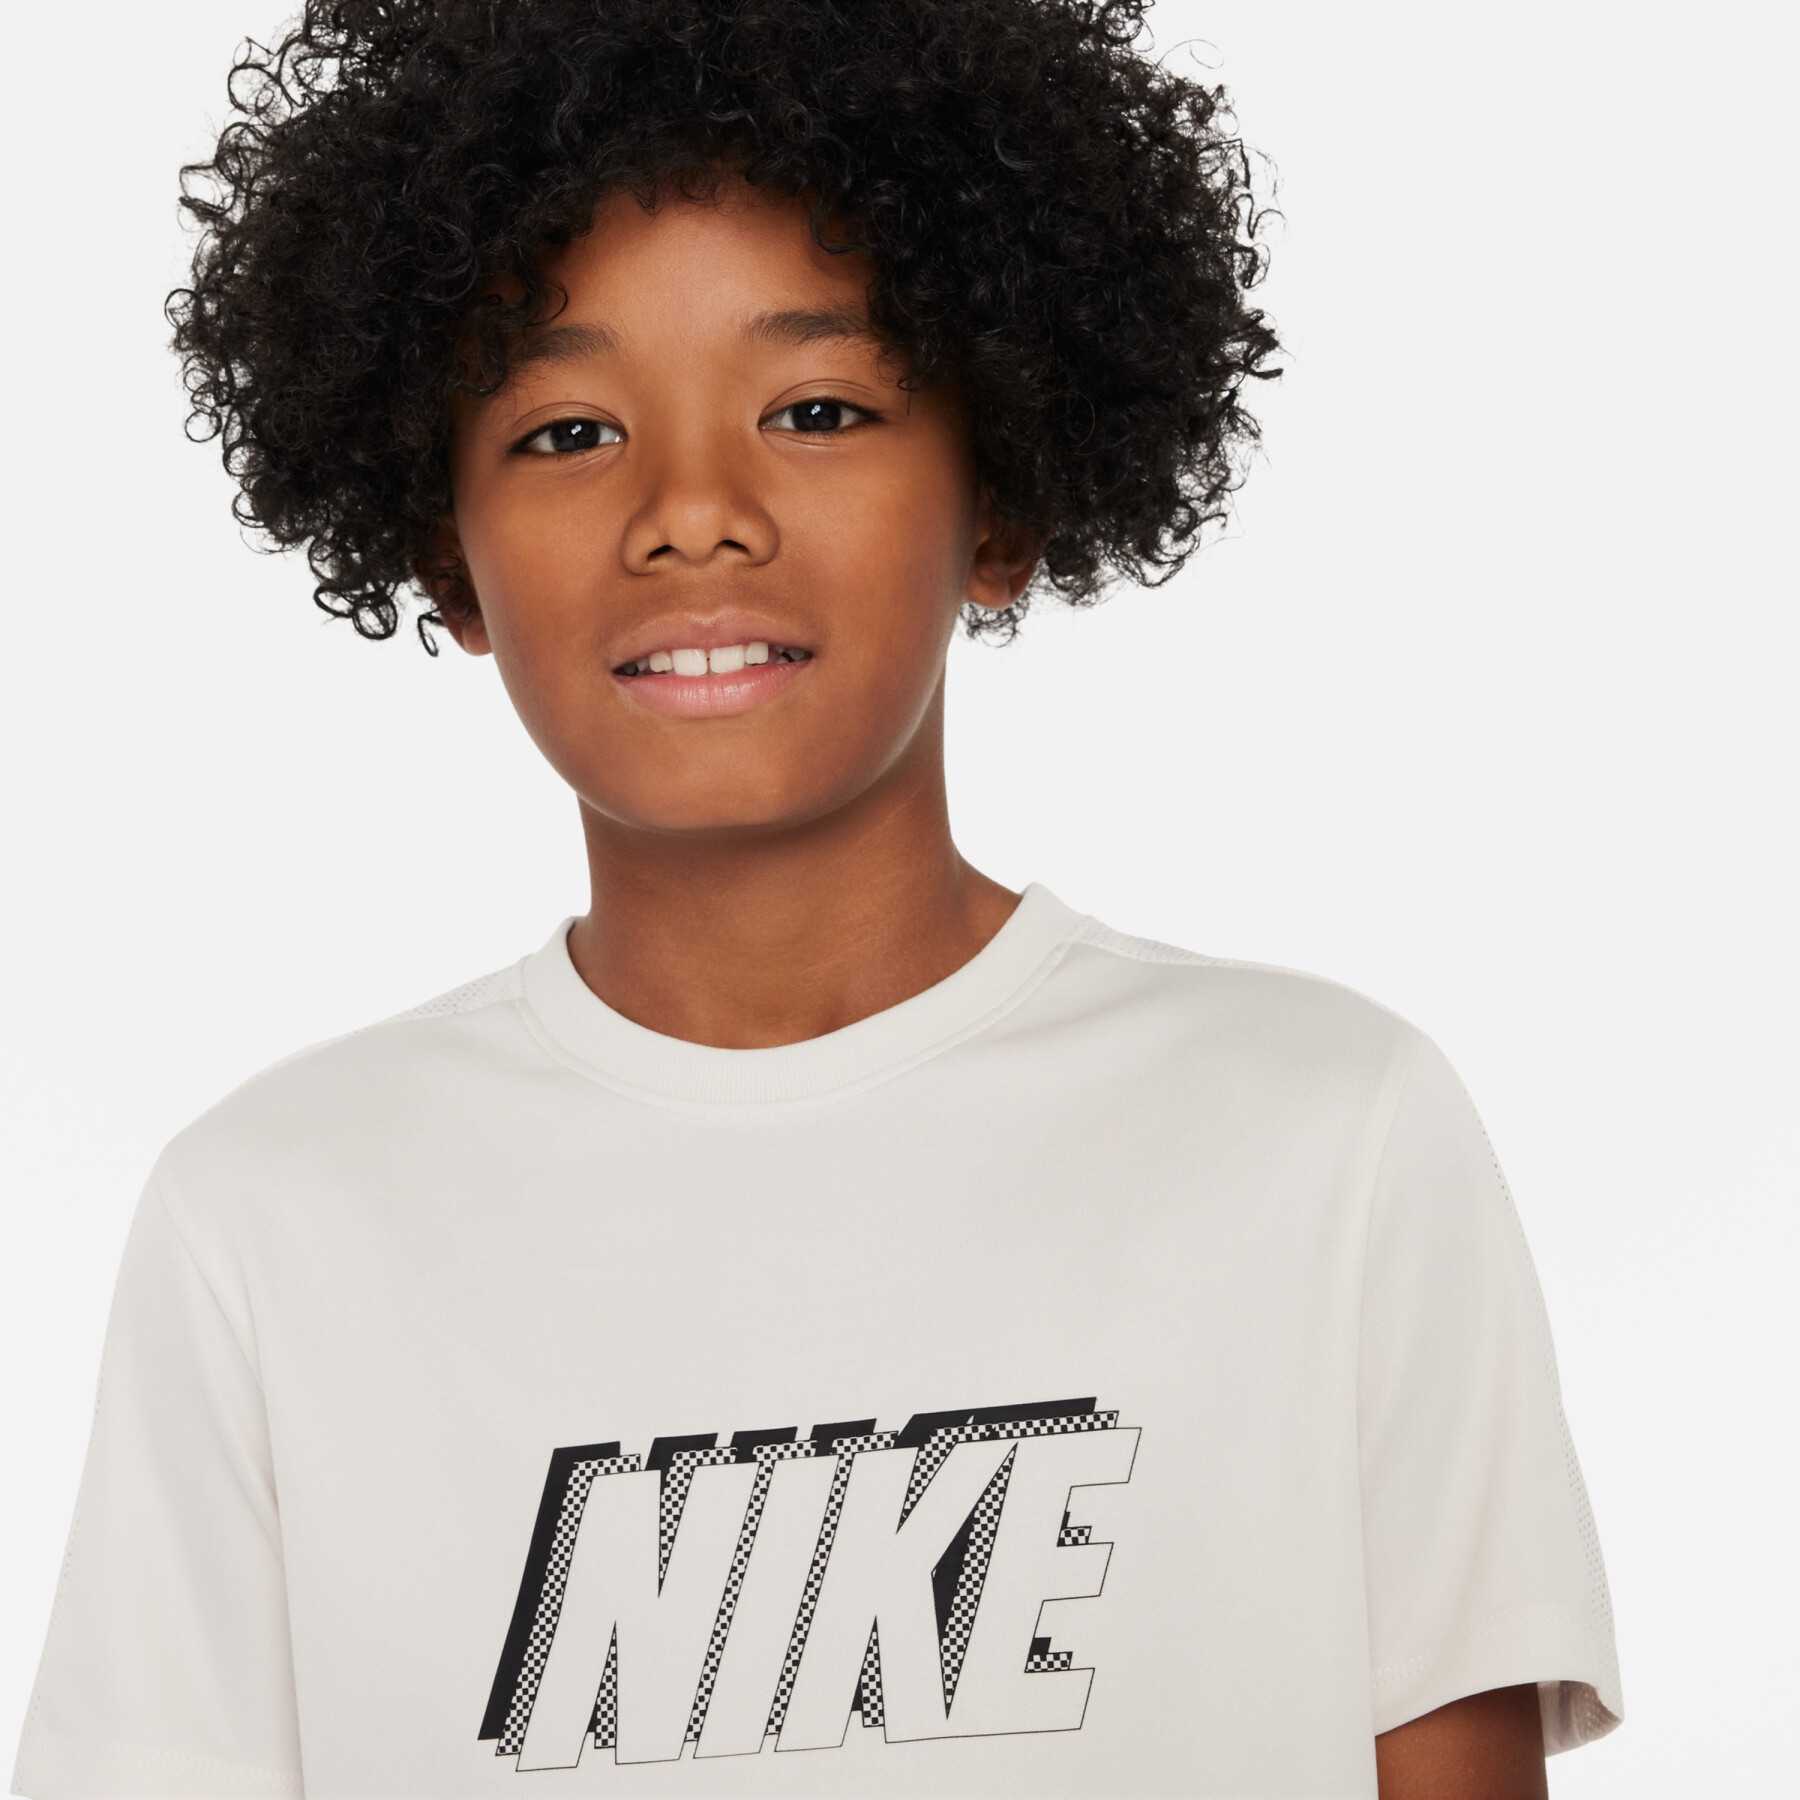 Maglia per bambini Nike Academy23 Dri-FIT